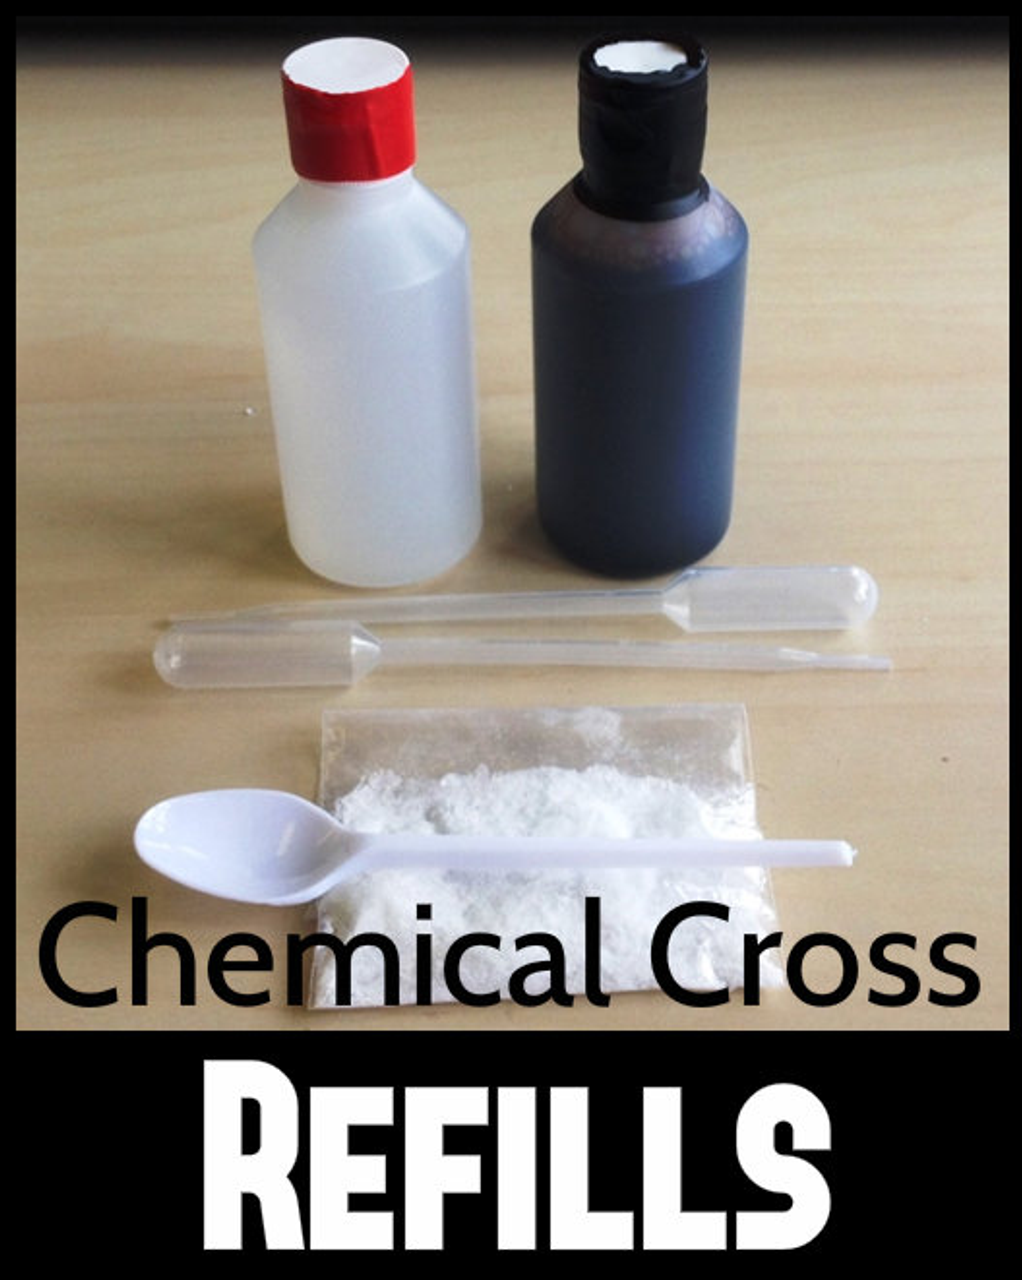 Chemical Cross Cleansing Cross Magic Trick Gospel Refills